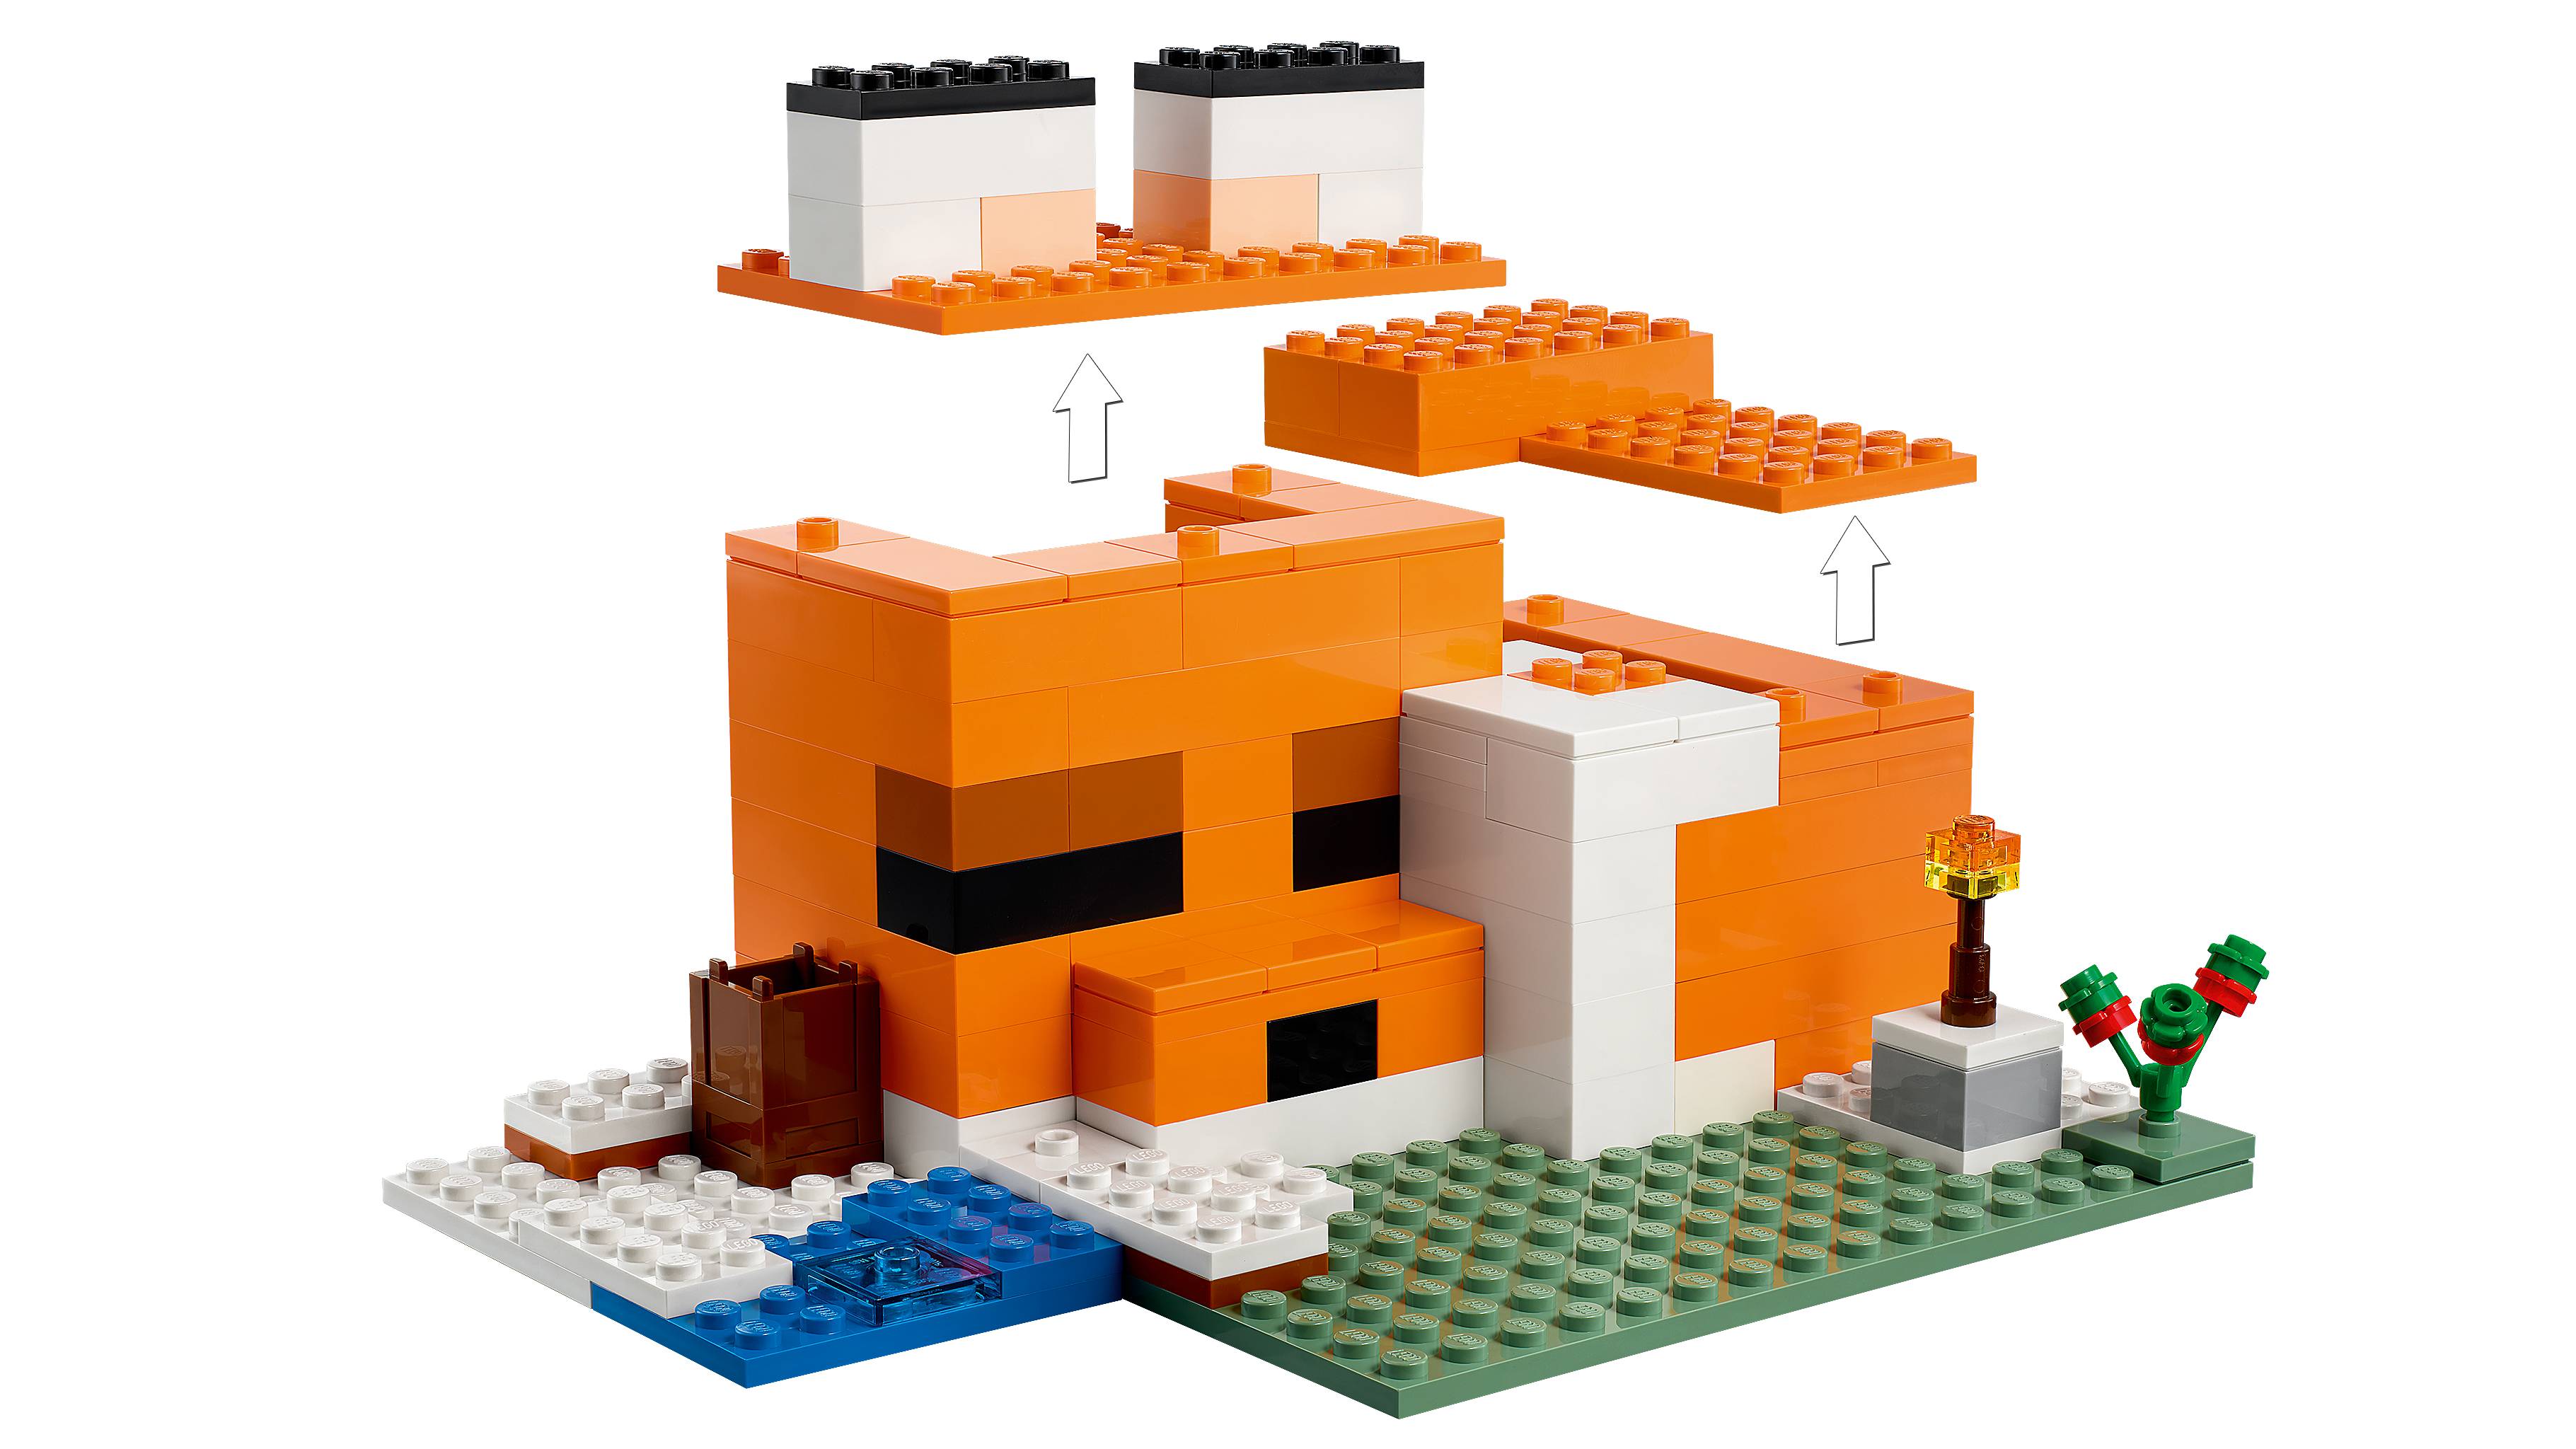 キツネ小屋 21178 - レゴ®マインクラフト セット - LEGO.comキッズ